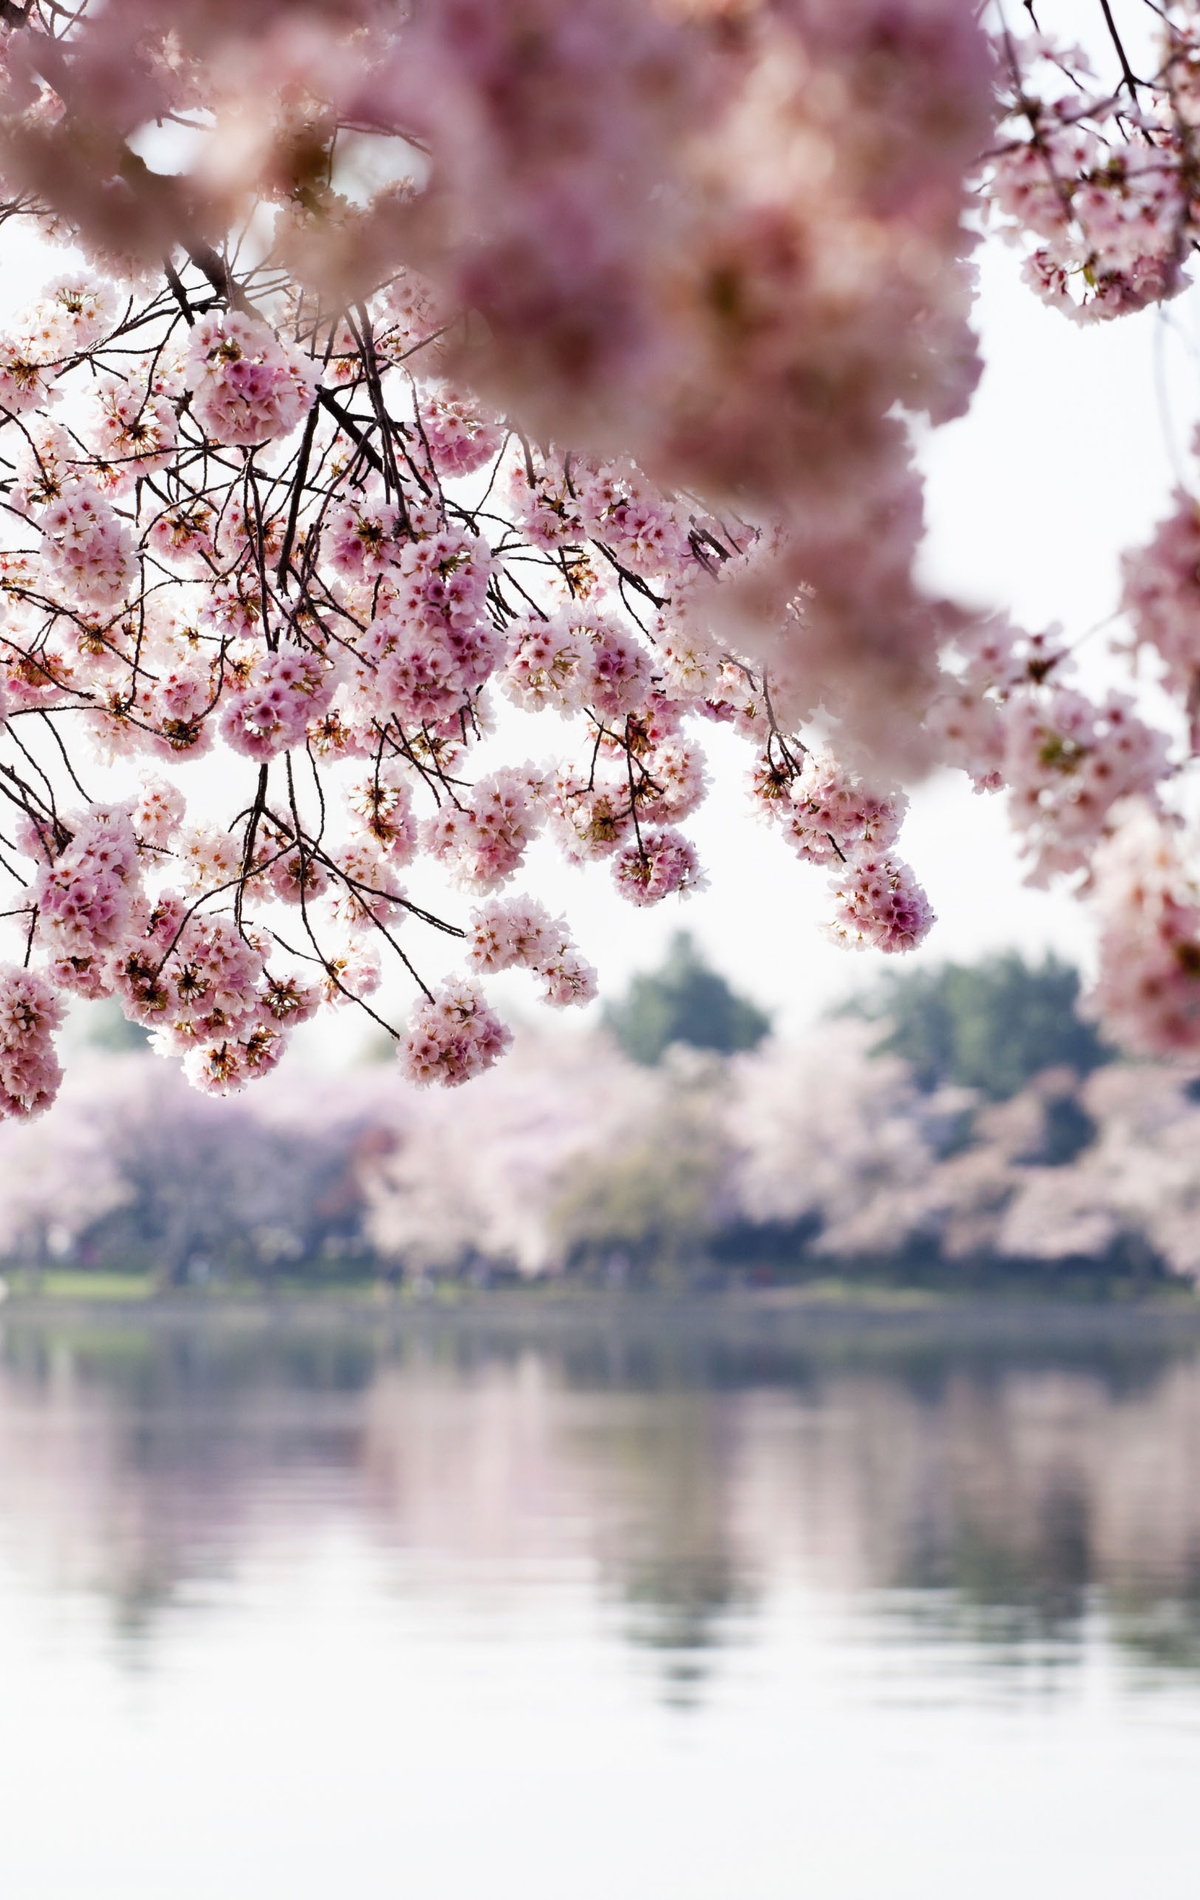 Картинка: Река, вода, яблоня, цветение, цветы, ветки, отражение, деревья, весна